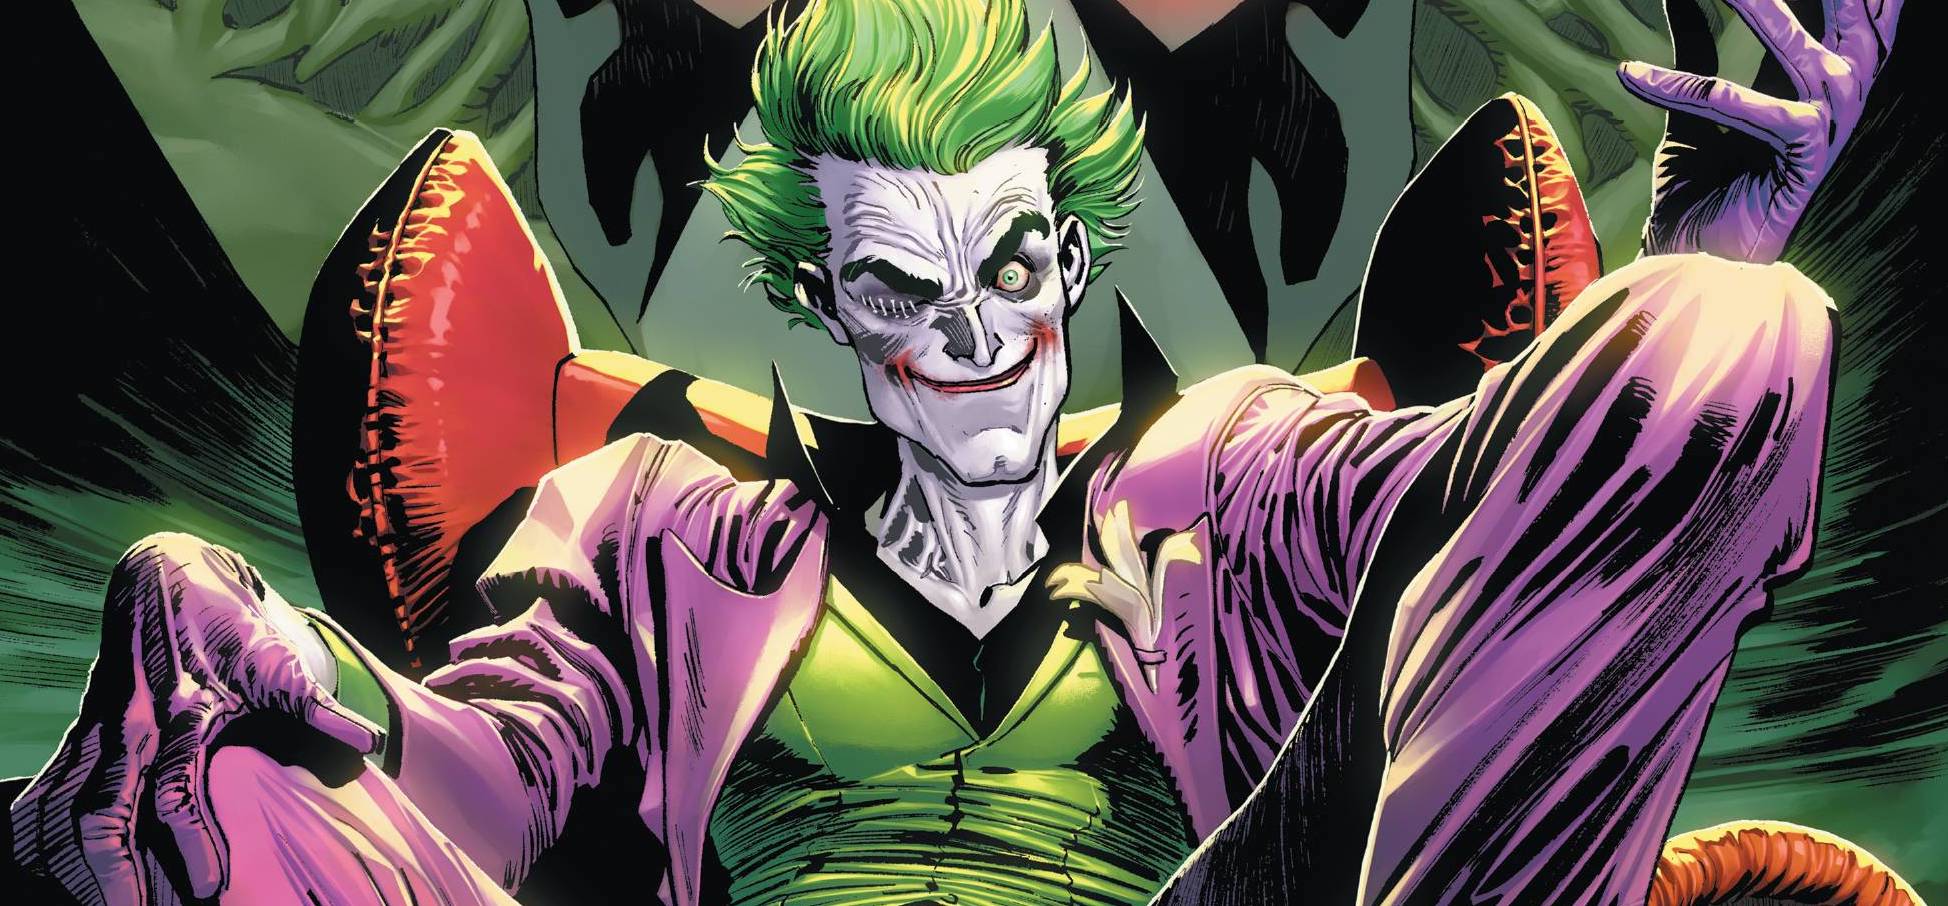 Review: The Joker #1 - COMIC CRUSADERS